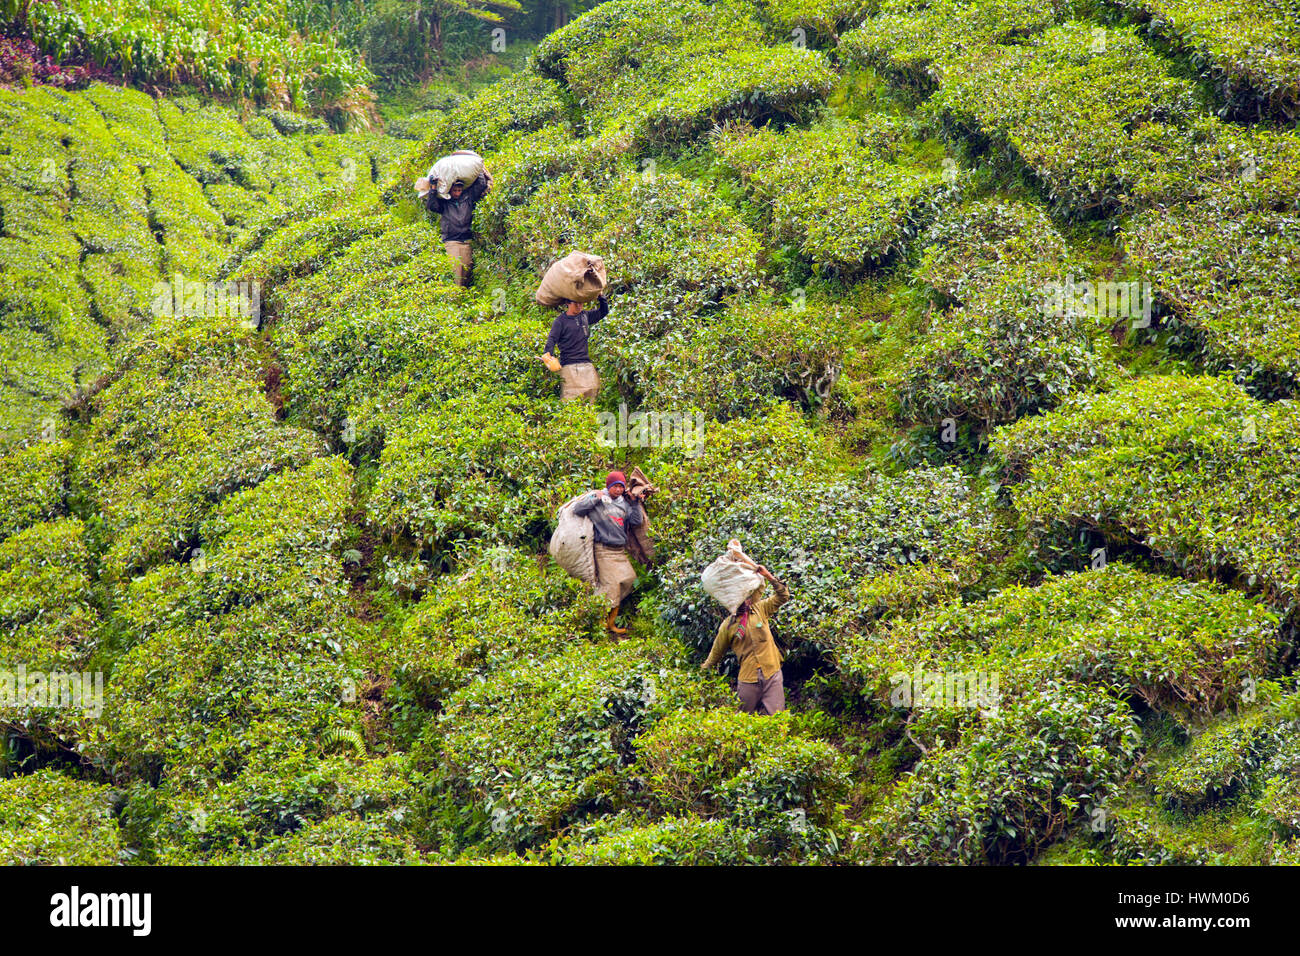 La plantation de thé Boh Cameron Highlands, Malaisie. Les cueilleurs de thé transportant les jours pickings jusqu'à l'usine de traitement Banque D'Images